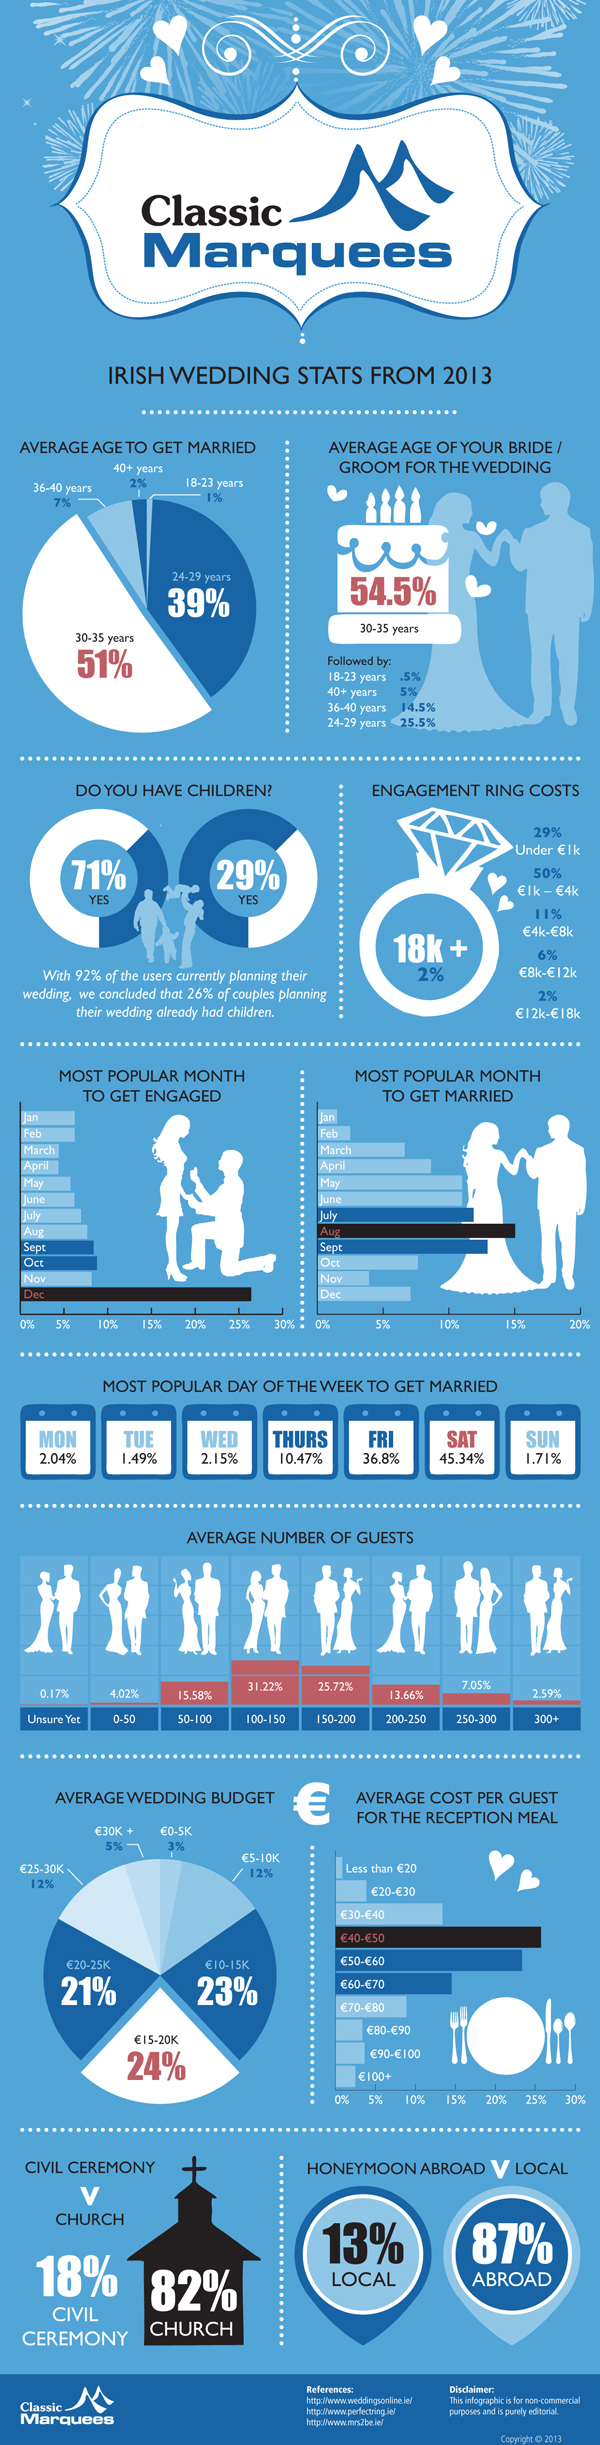 Irish Wedding Stats From 2013